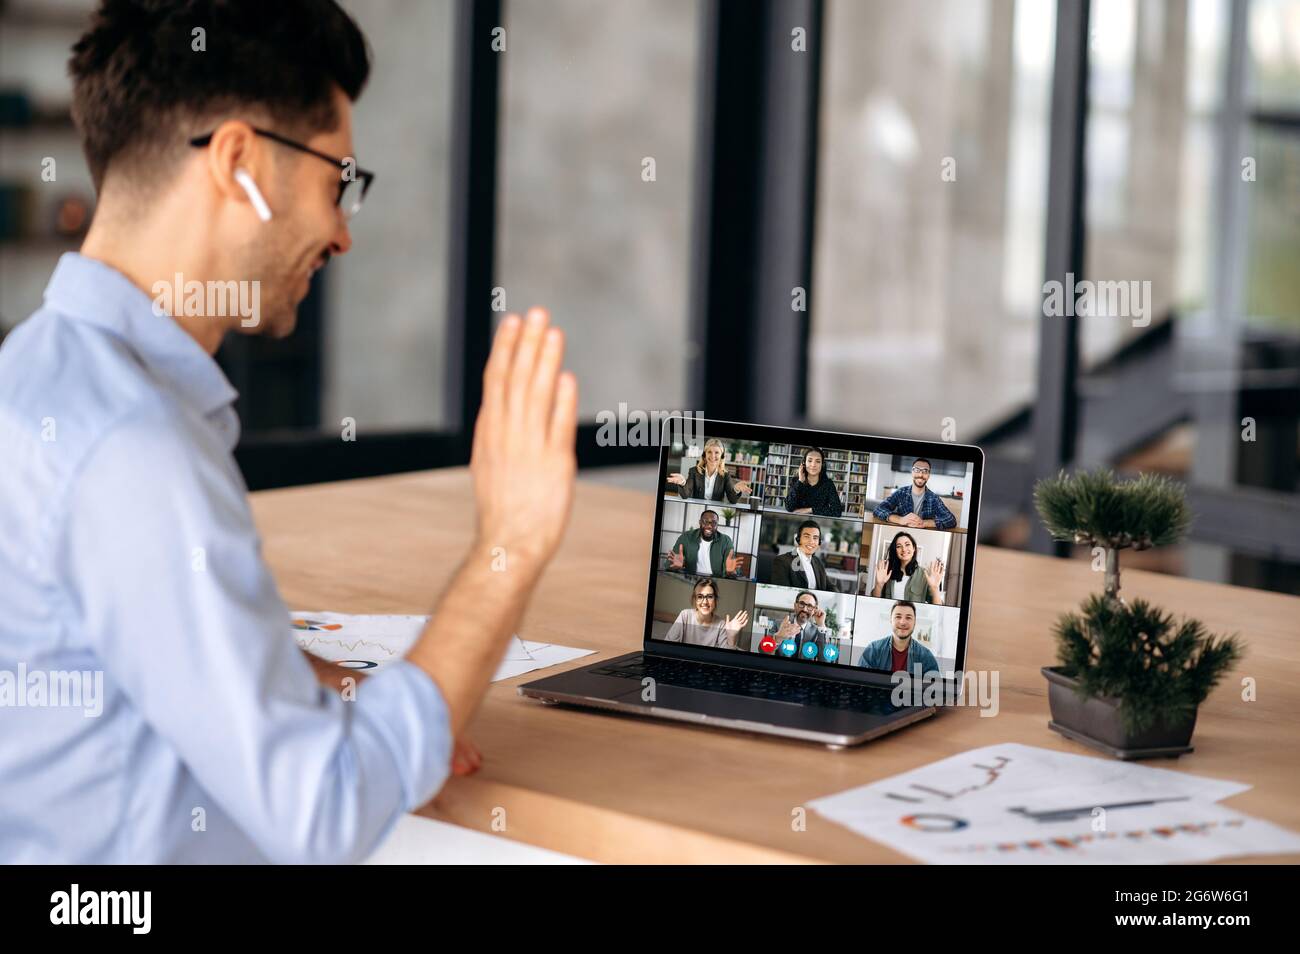 Uomo d'affari di successo caucasico avere una riunione virtuale online con persone diverse, parlare con colleghi multirazziali tramite videochiamata in conferenza utilizzando il laptop, siede in ufficio, saluto interlocutori Foto Stock